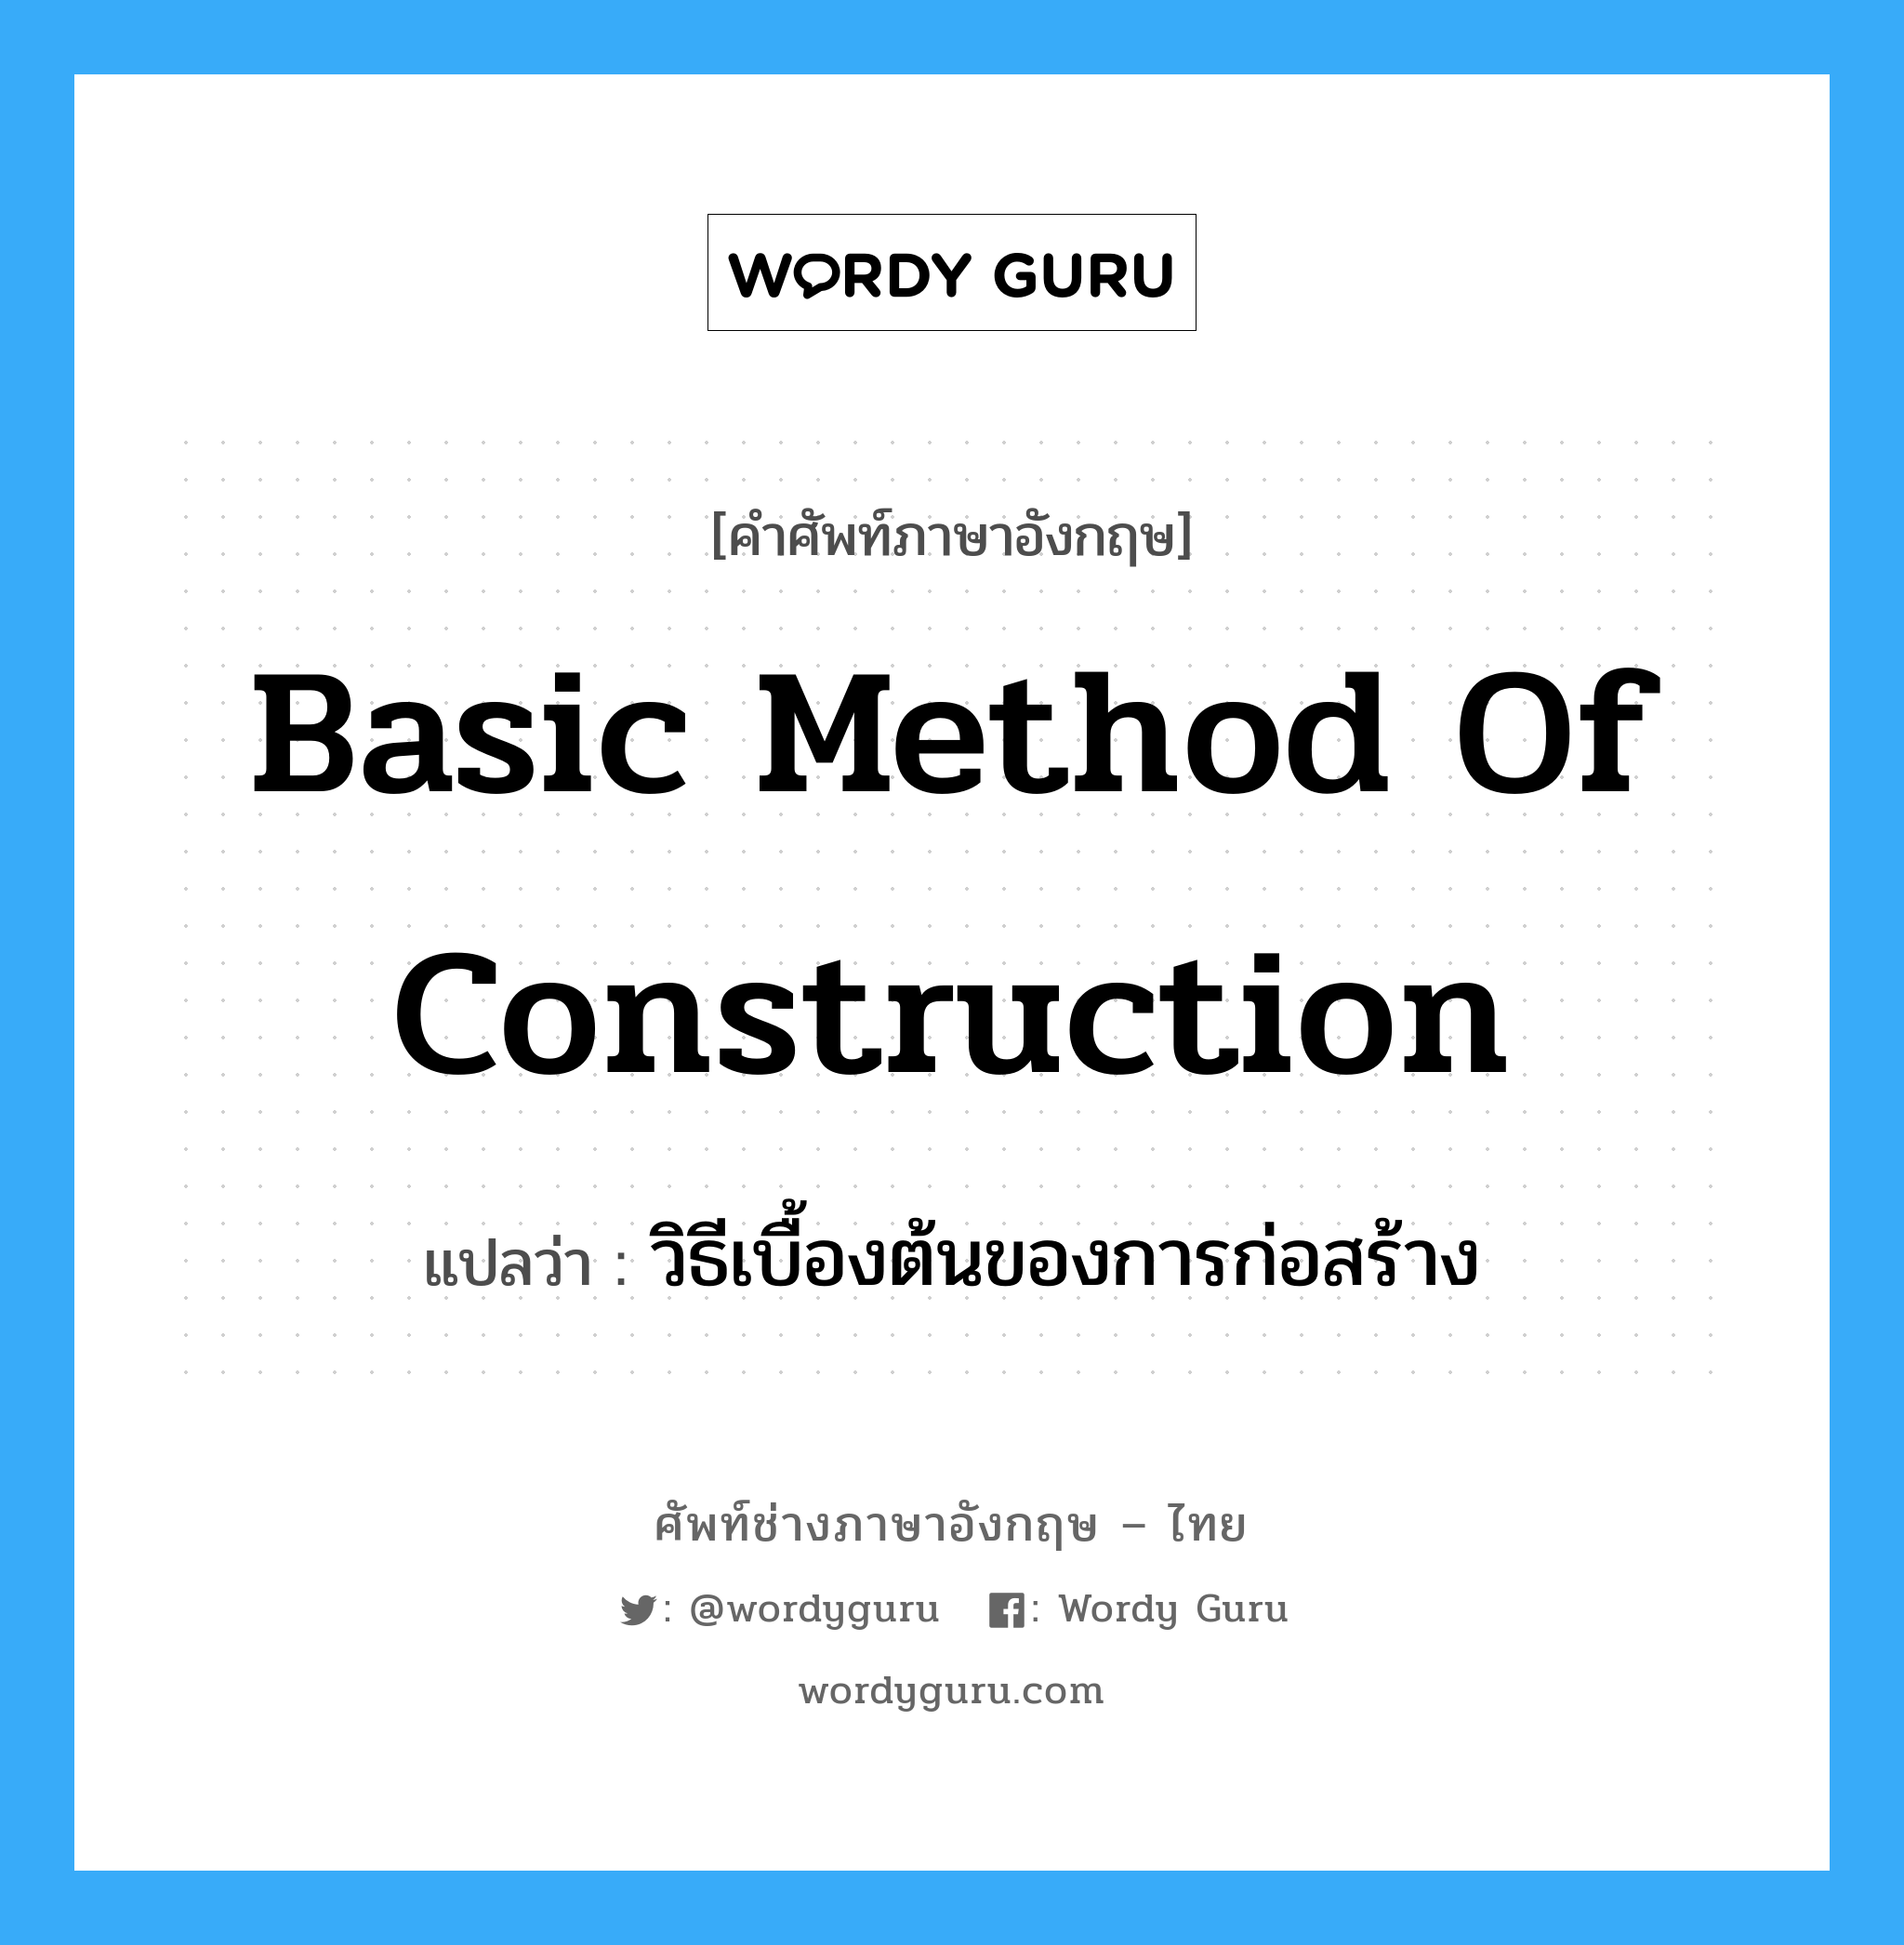 วิธีเบื้องต้นของการก่อสร้าง ภาษาอังกฤษ?, คำศัพท์ช่างภาษาอังกฤษ - ไทย วิธีเบื้องต้นของการก่อสร้าง คำศัพท์ภาษาอังกฤษ วิธีเบื้องต้นของการก่อสร้าง แปลว่า basic method of construction